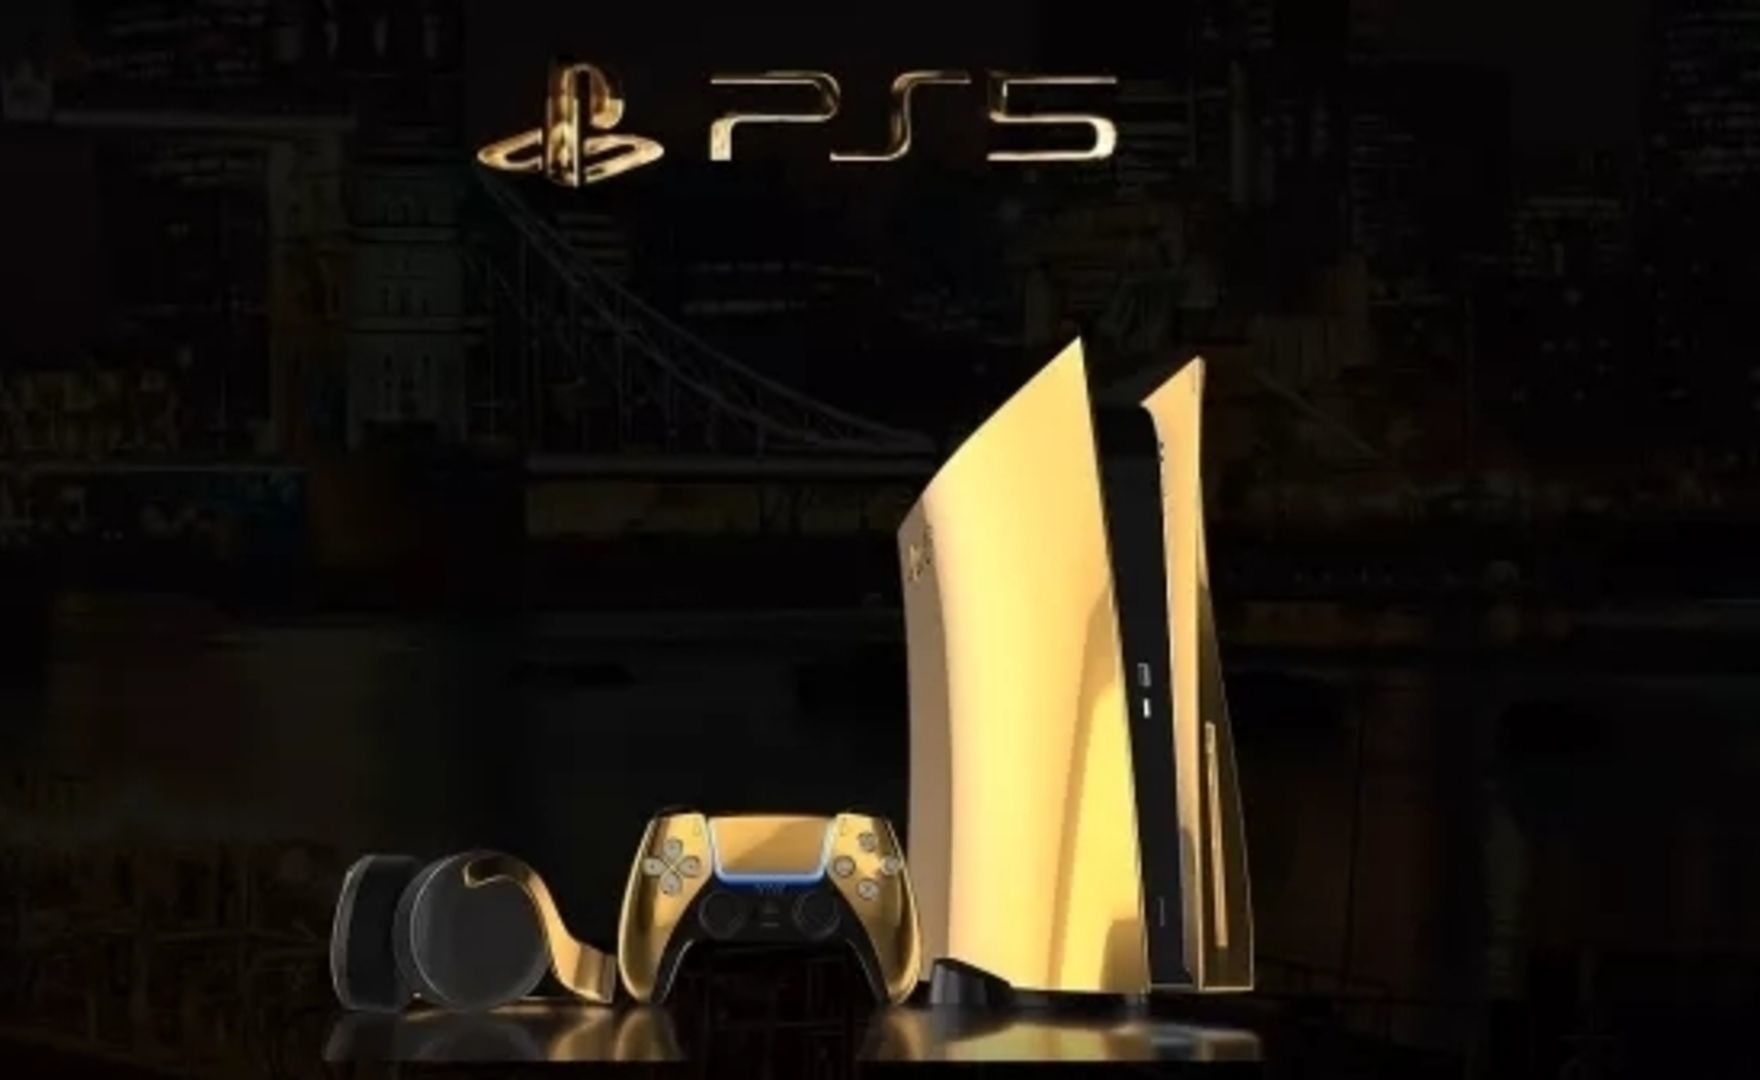 PS5 in oro 24 carati, annunciata la versione super esclusiva